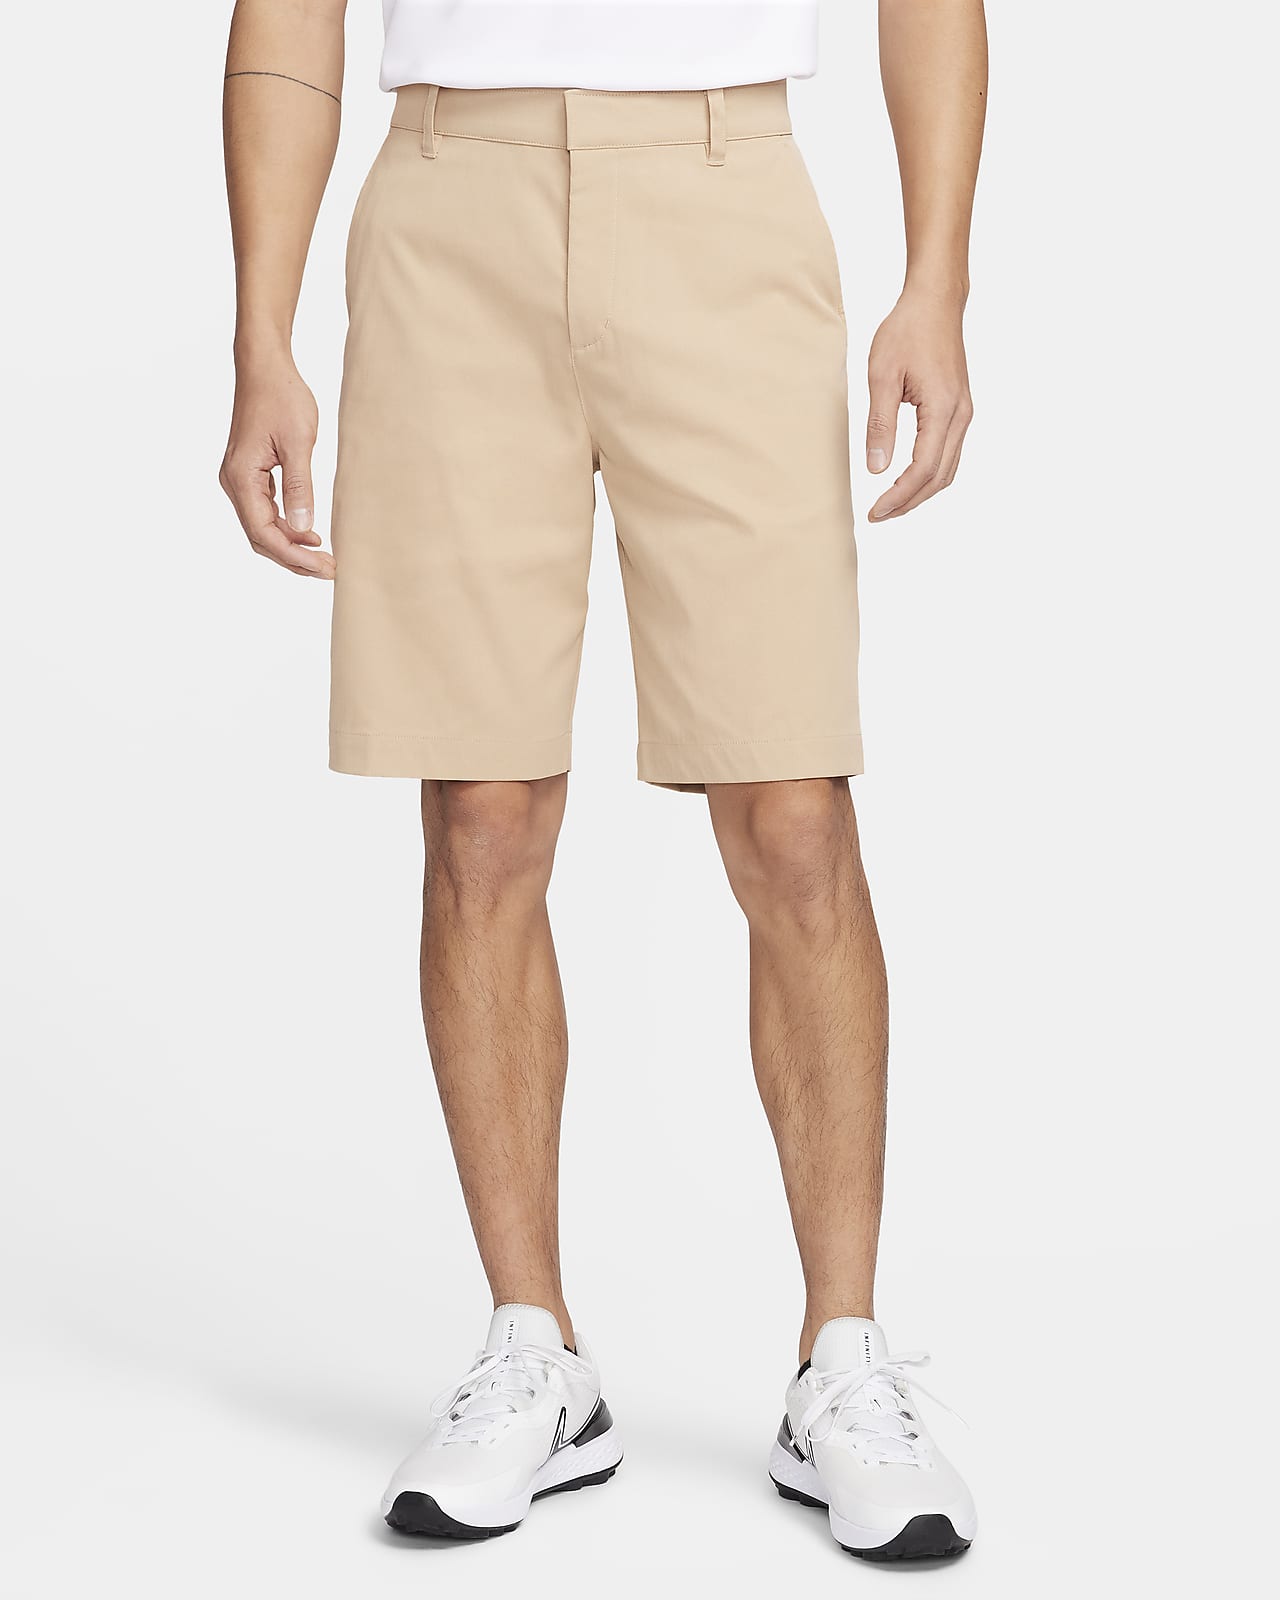 Shorts chinos de golf de 25 cm para hombre Nike Tour